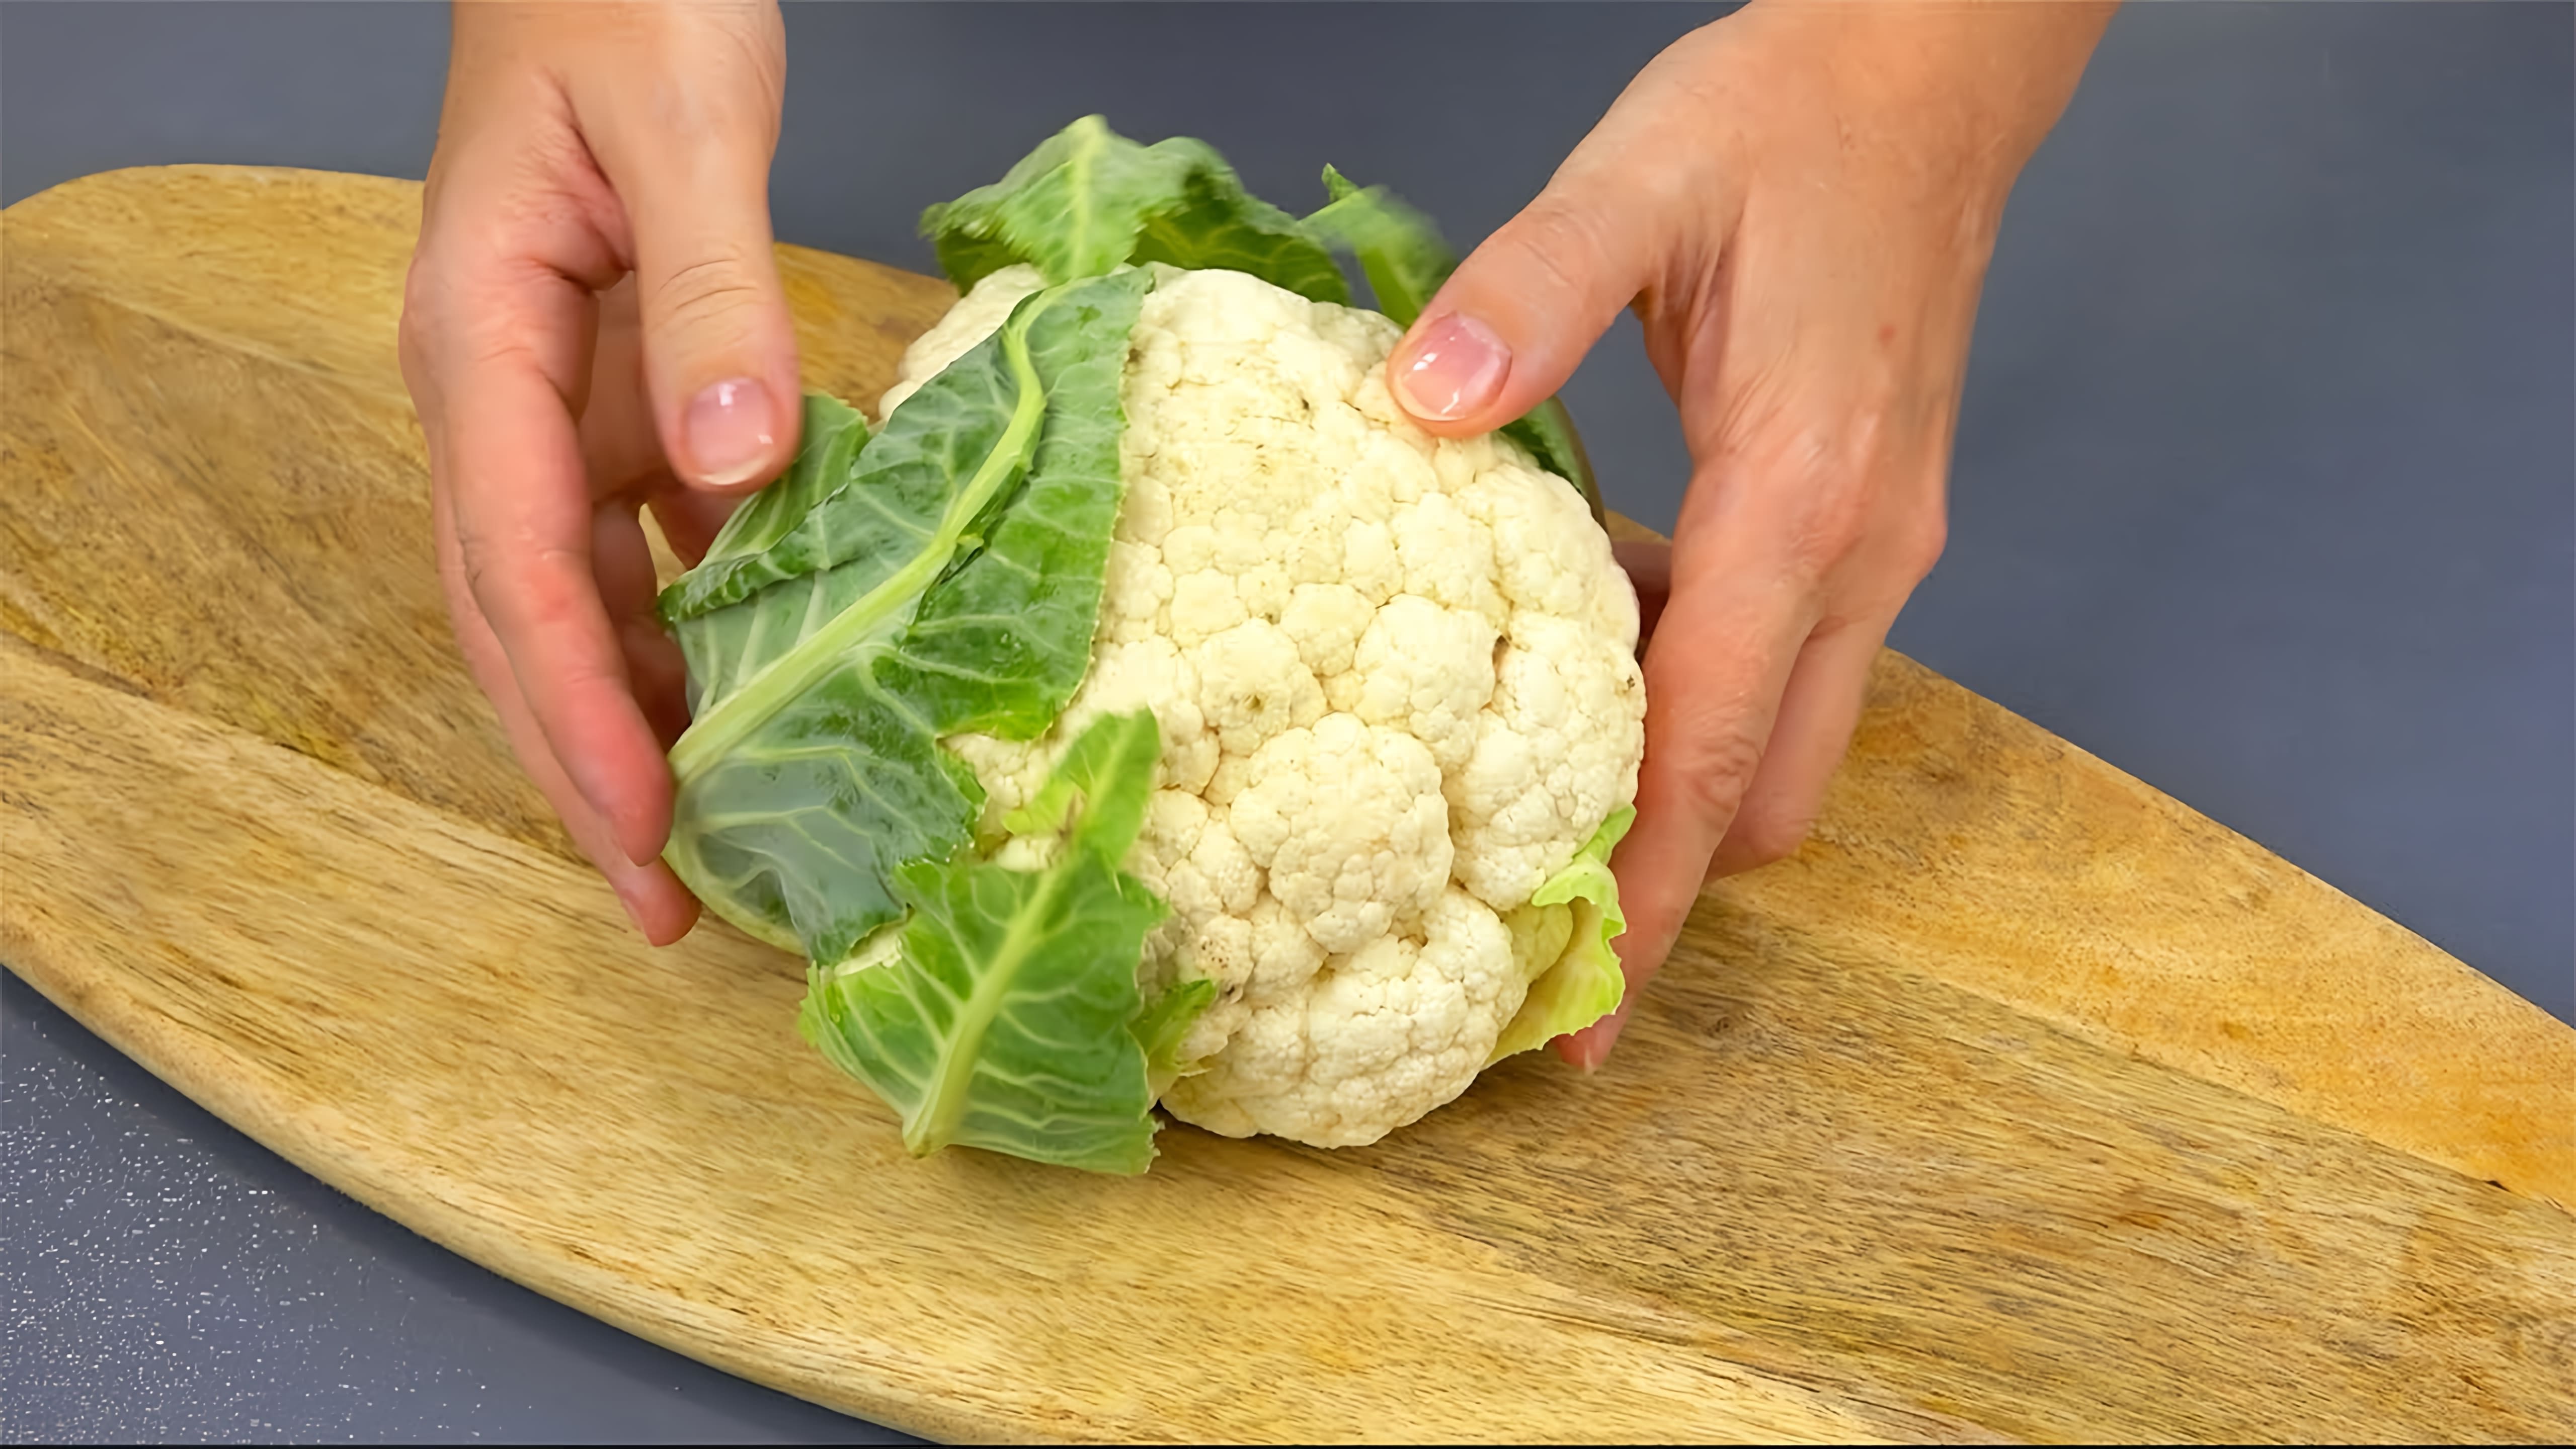 Видео 5 рецептов приготовления разноцветной капусты различными способами - маринованной капусты, капустного салата, жареной с курицей и капустой, "чего-то" из капусты (зрители не могут определить блюдо) и капусты в тесте и жареной